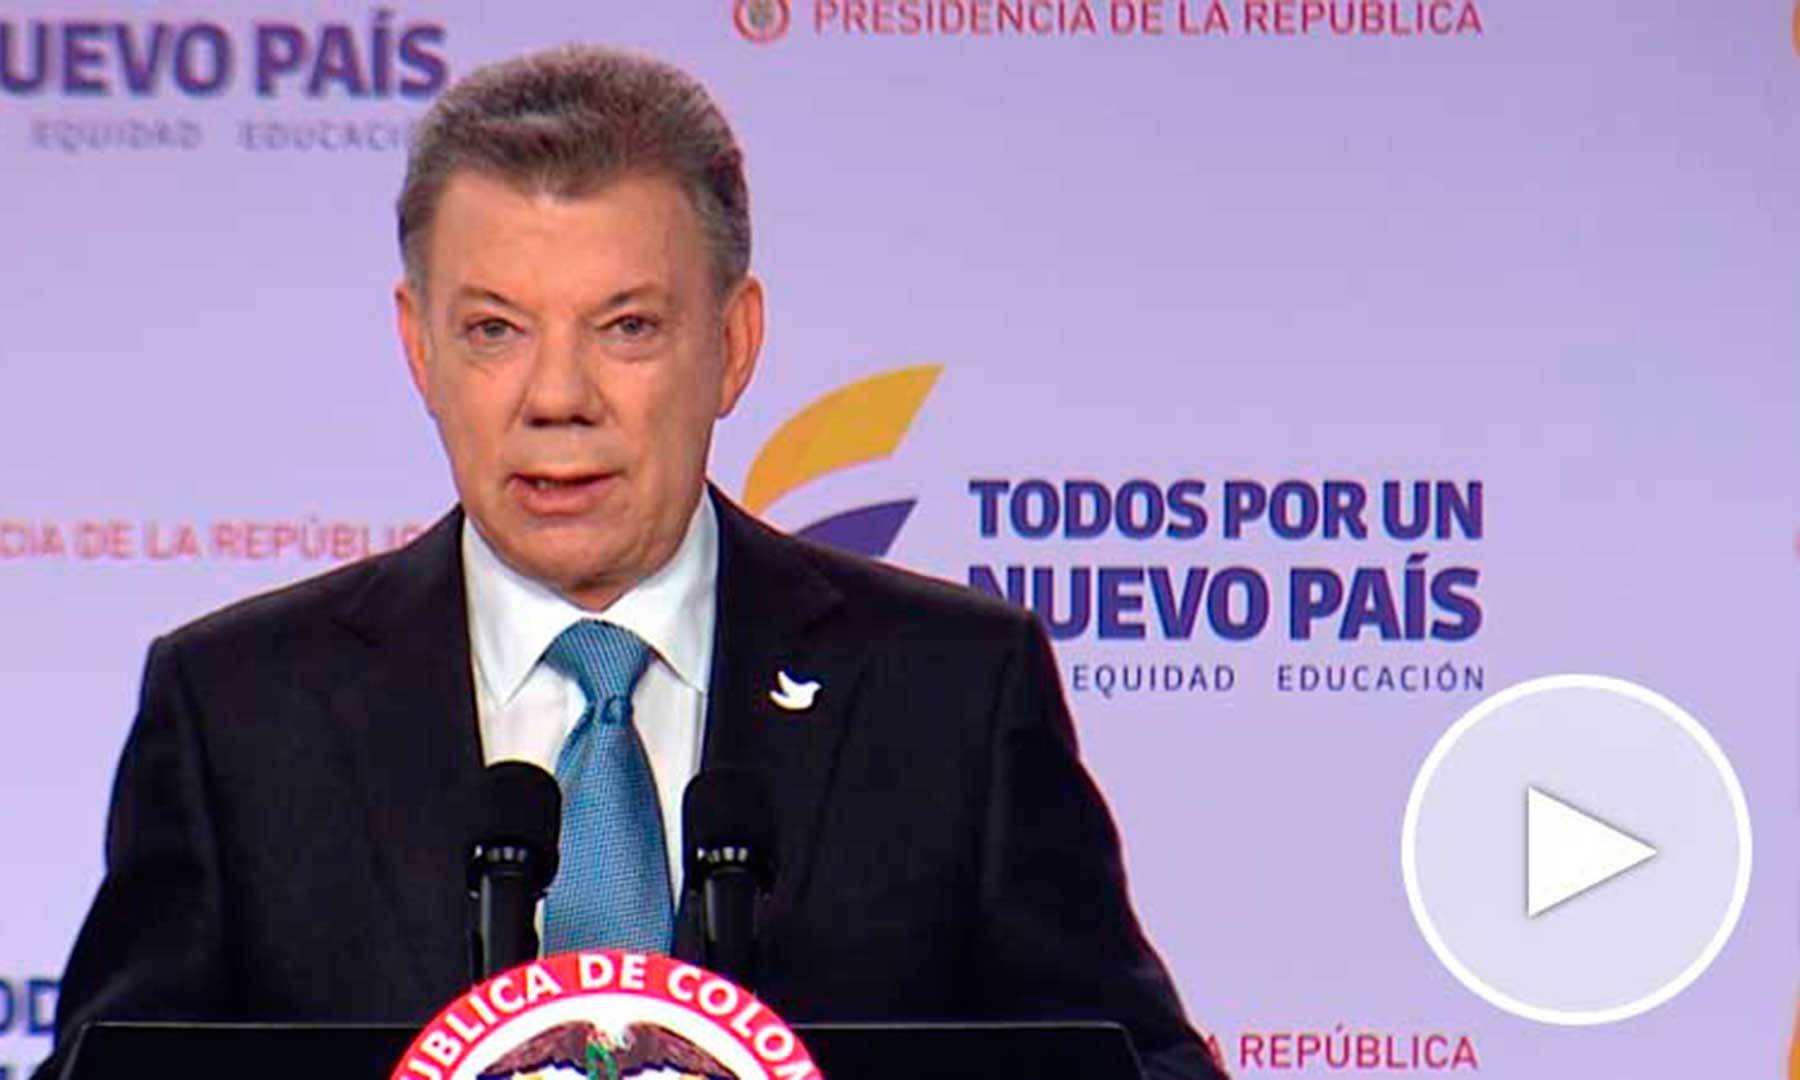 El Presidente Santos emprende visita a Washington para fortalecer el intercambio político y comercial de Colombia con EEUU